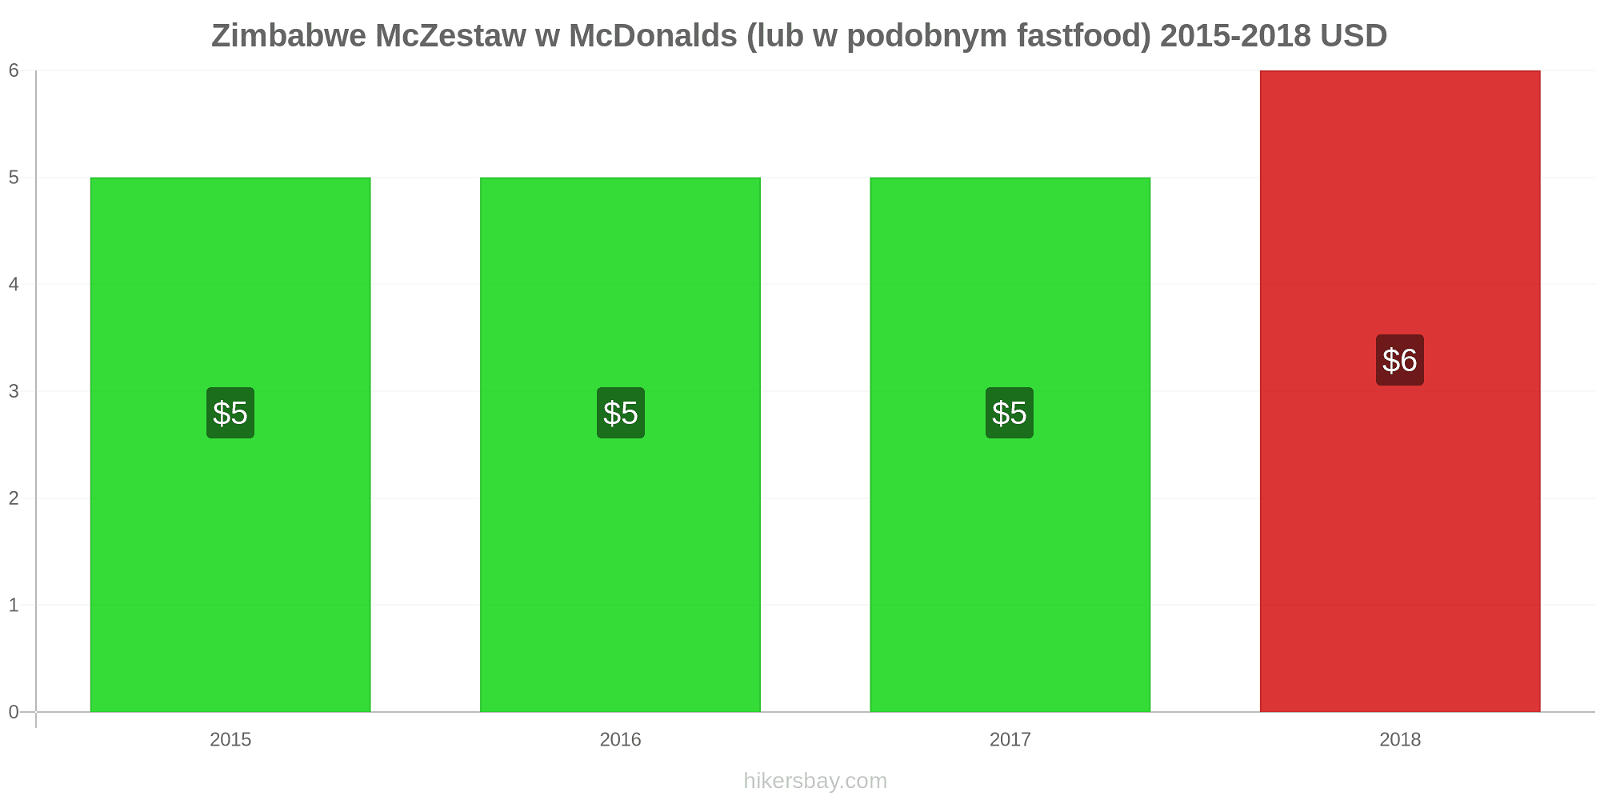 Zimbabwe zmiany cen McZestaw w McDonalds (lub w podobnym fastfood) hikersbay.com